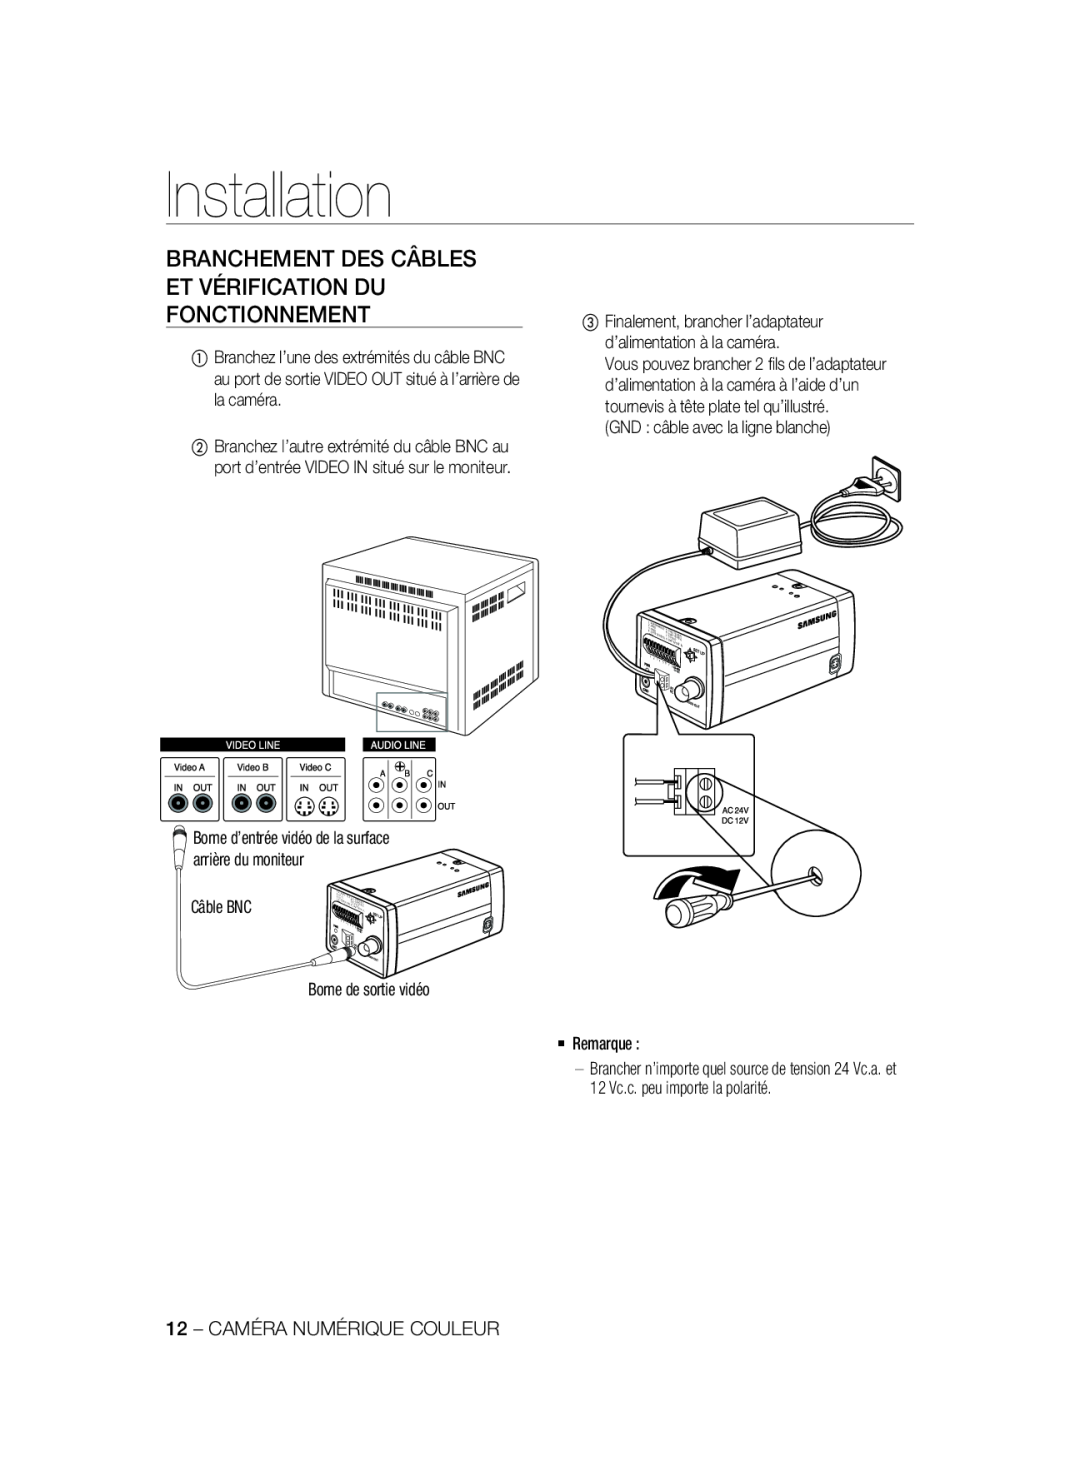 Samsung SCC-A2333P Branchement Des Câbles Et Vérification Du Fonctionnement, Installation, GND câble avec la ligne blanche 